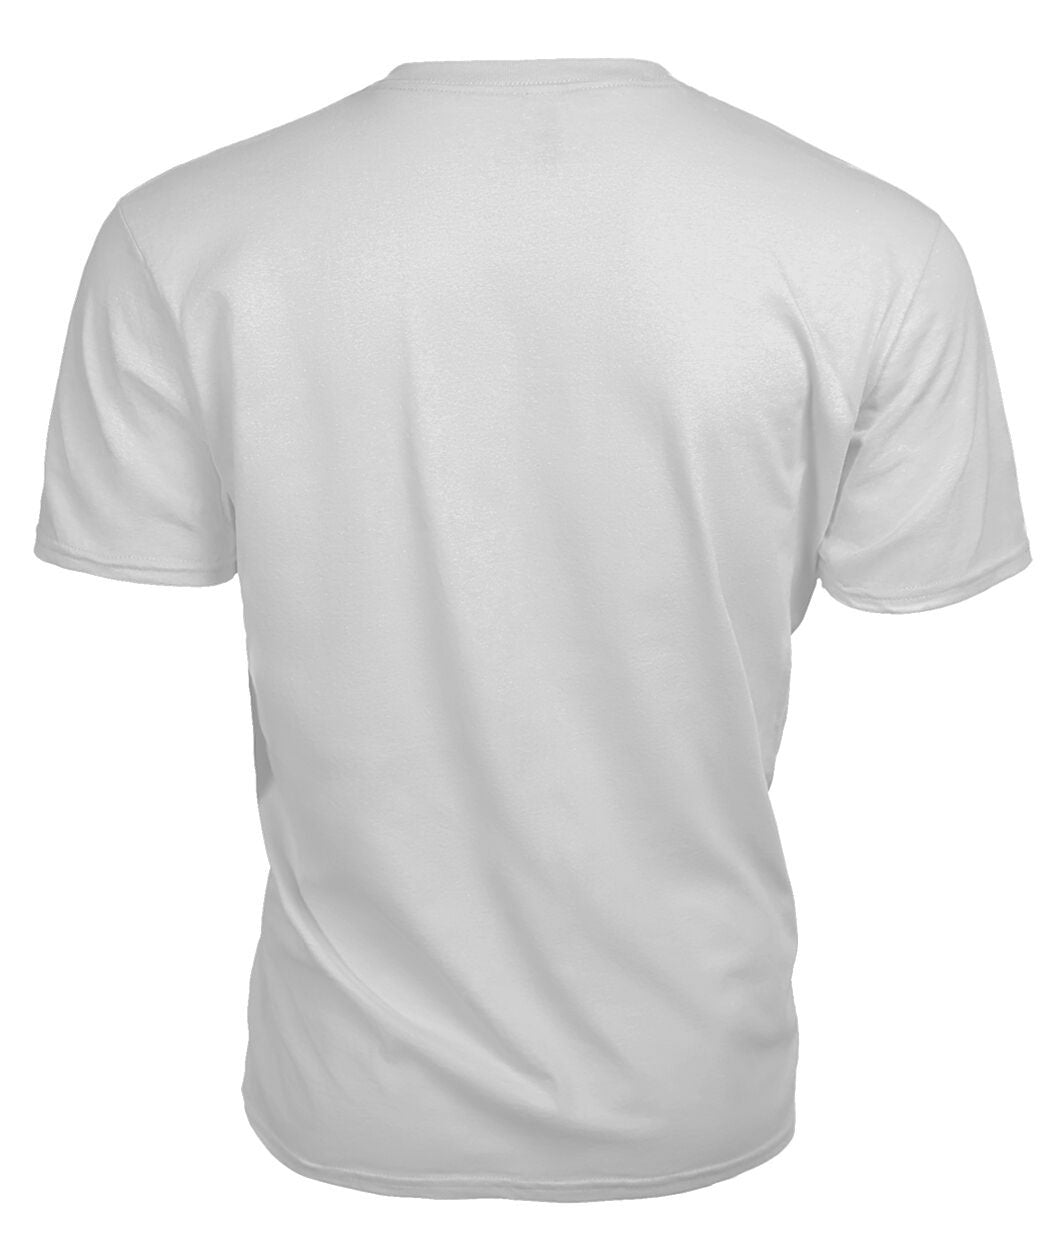 MacPhee Modern Tartan Crest 2D T-shirt - Blood Runs Through My Veins Style